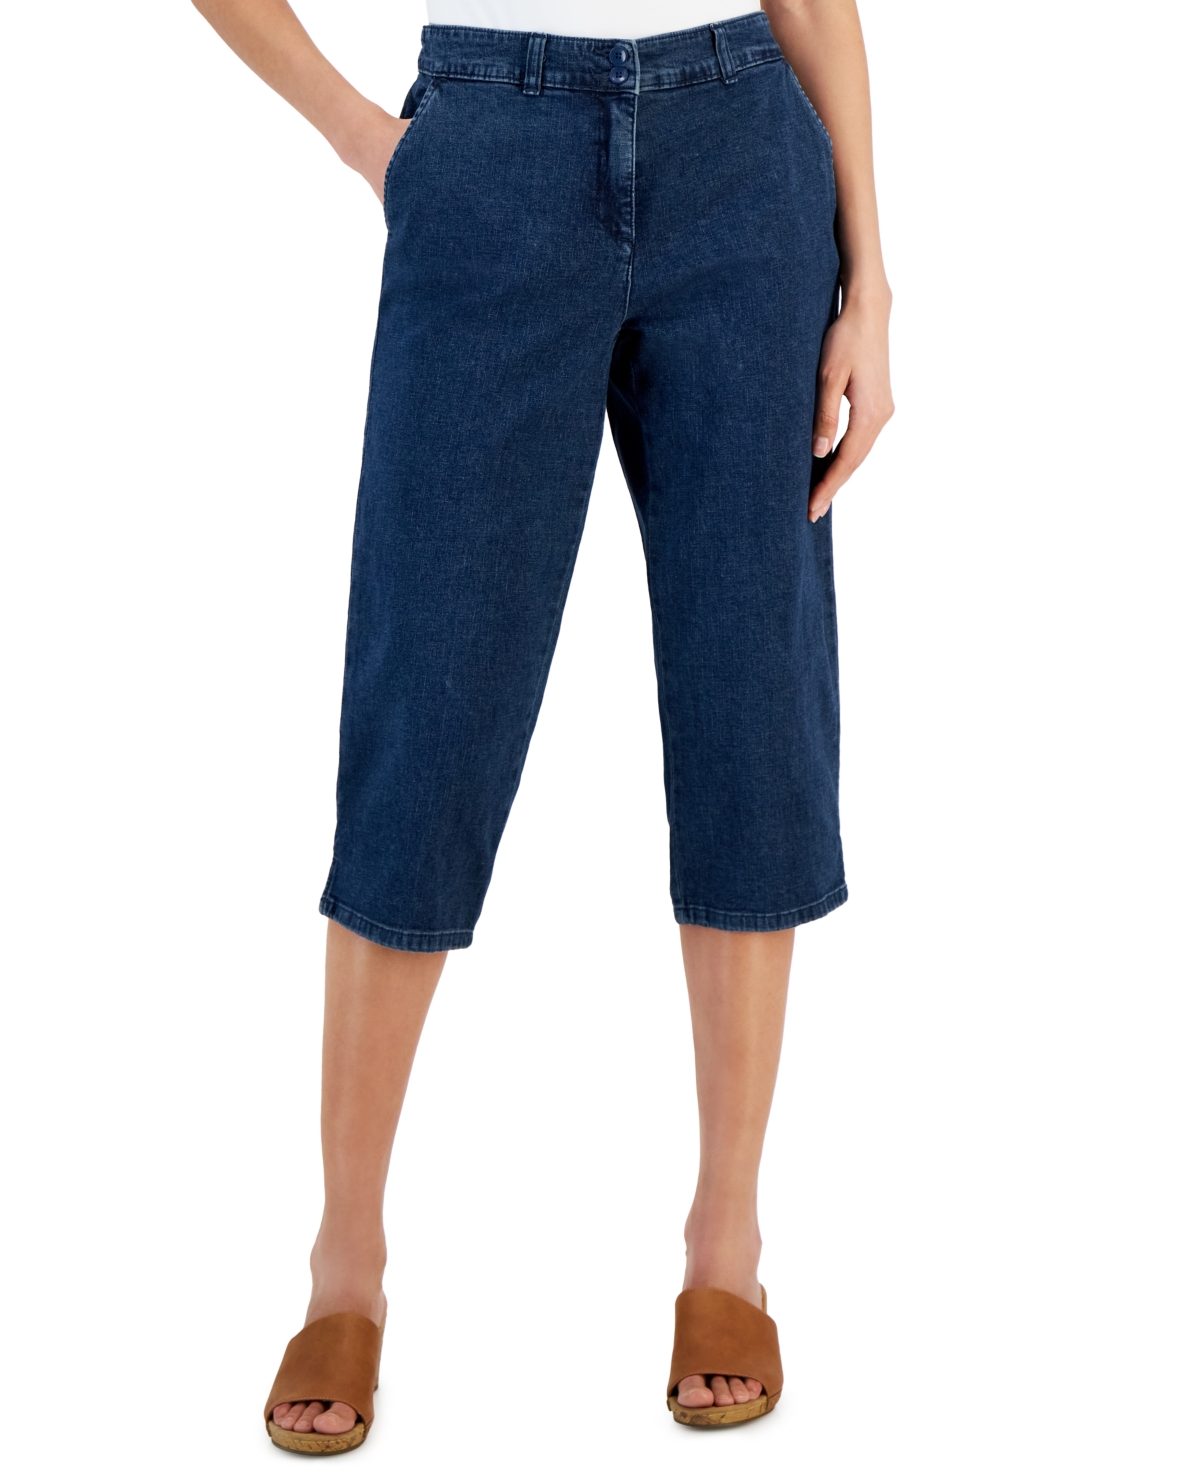 Women's Denim Comfort Capri Pants, Created for Macy's - KS Overcast